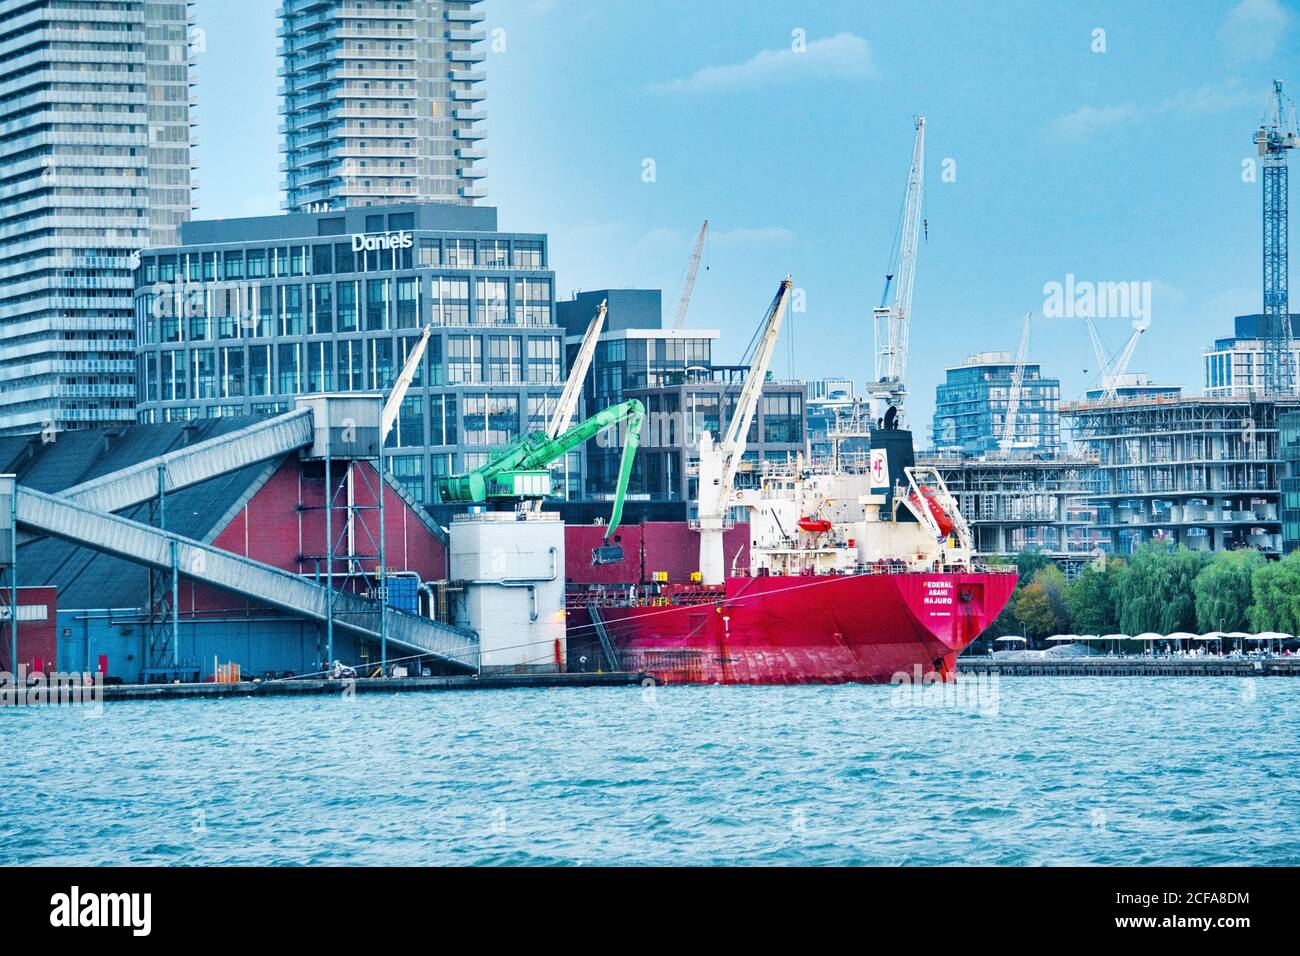 Buque carguero de carga Federal Asahi Majuro (IMO: 9200419, MMSI 538006753), descarga en el muelle de refinería de azúcar Redpath, Toronto, Ontario, Canadá, AT d Foto de stock